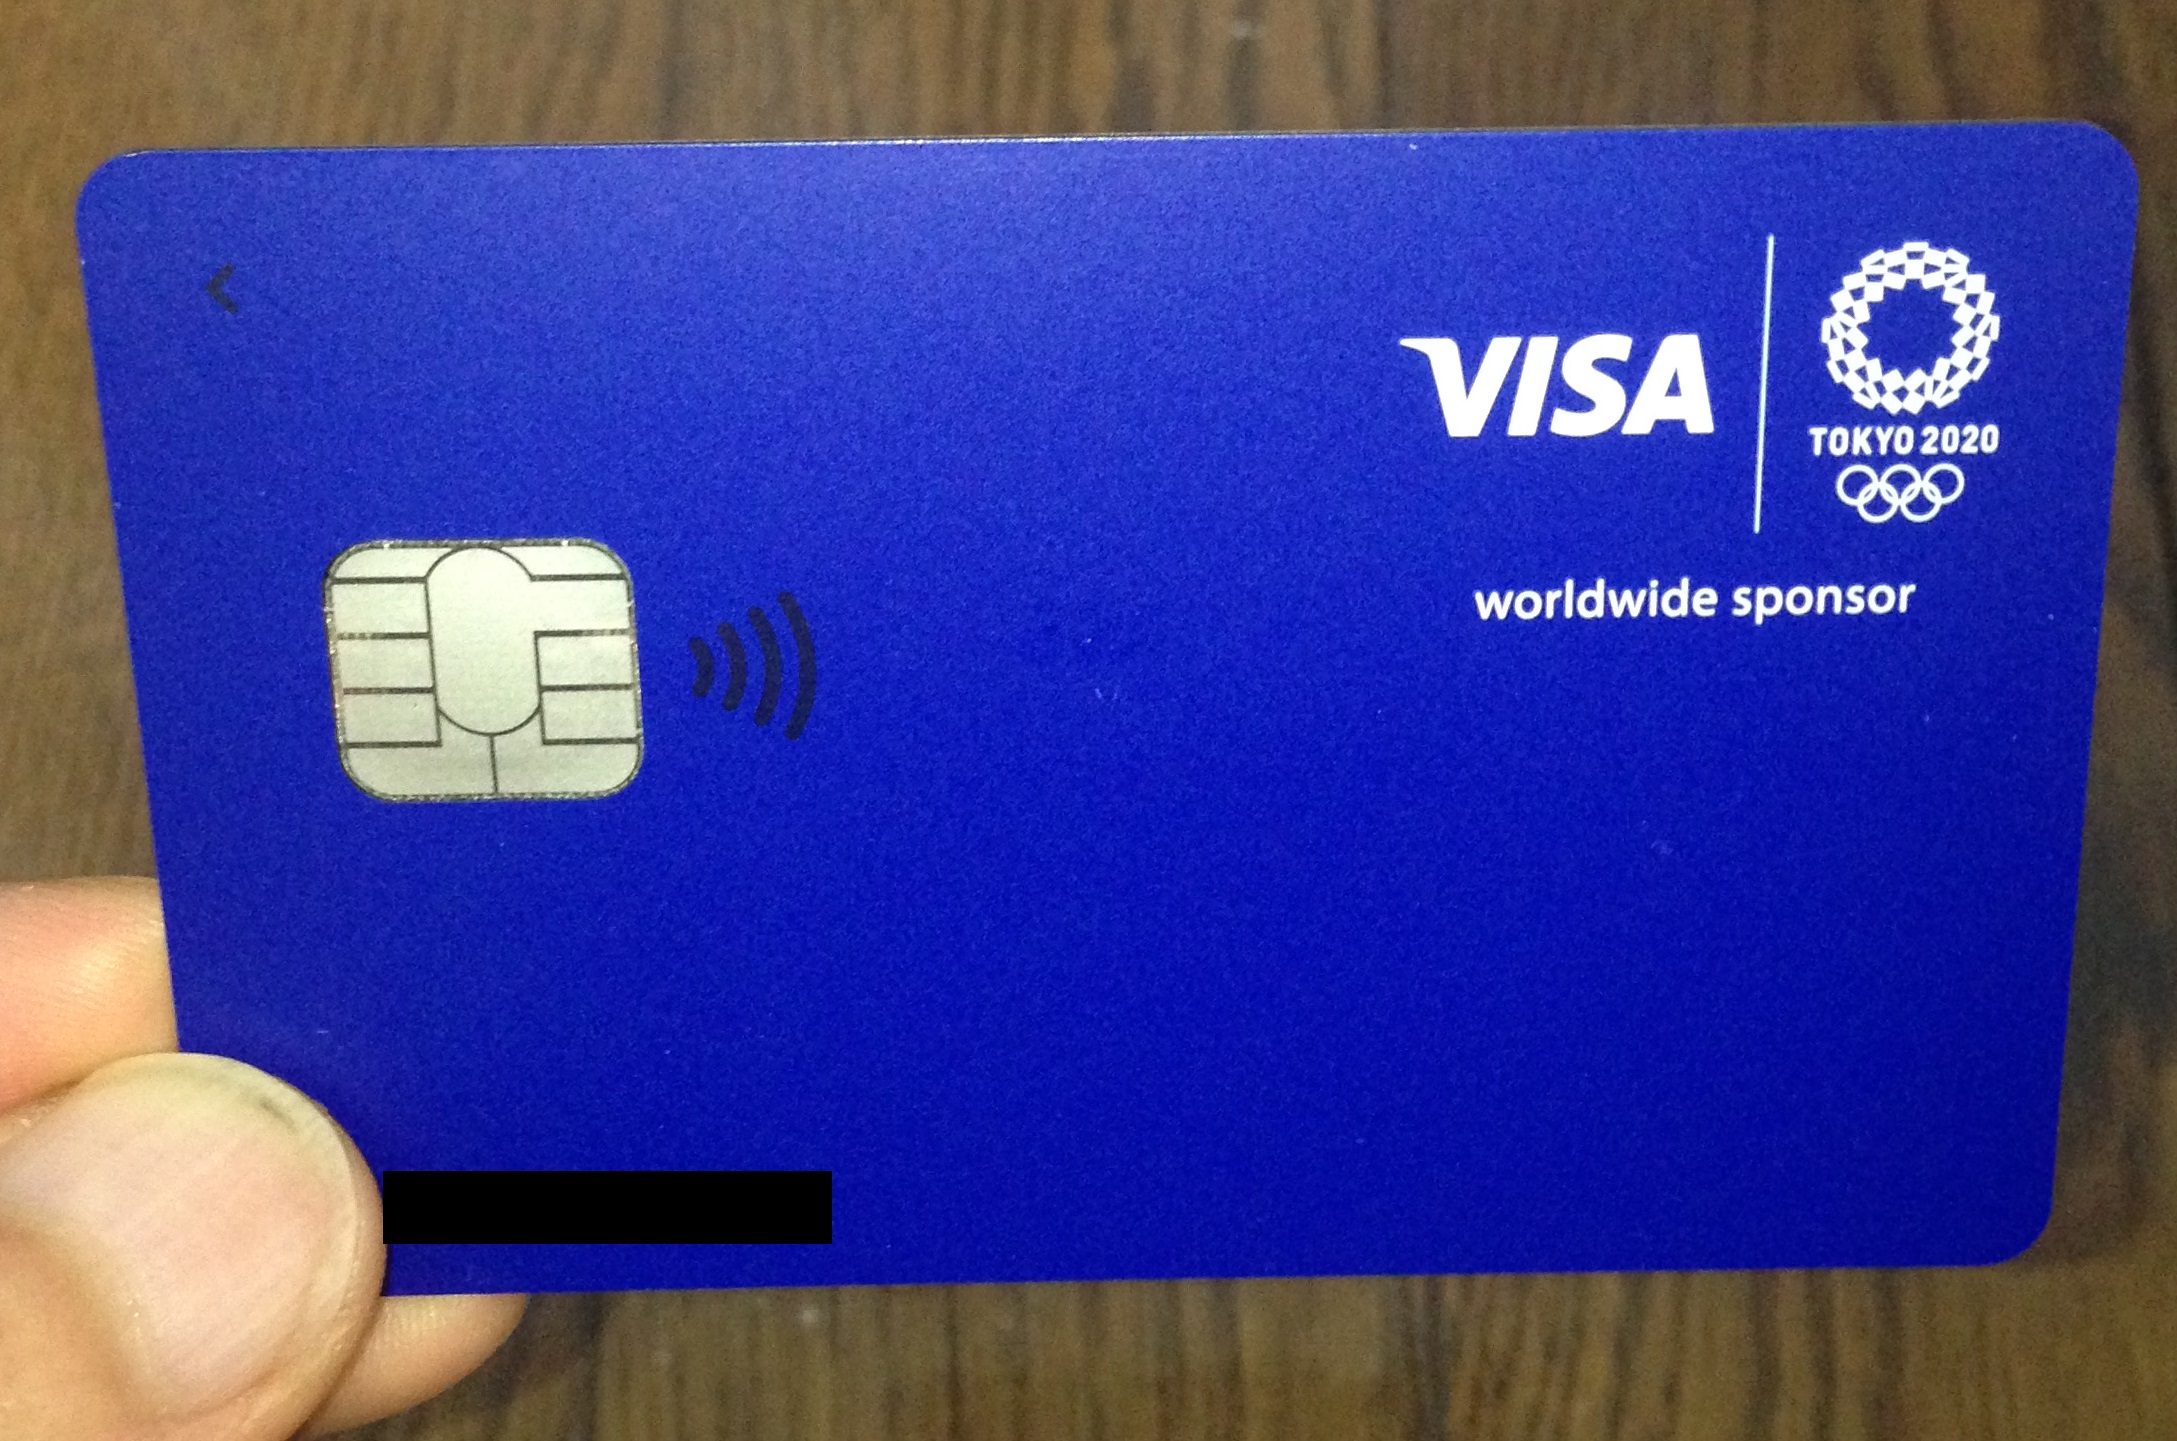 VisaLINEPayクレジットカード